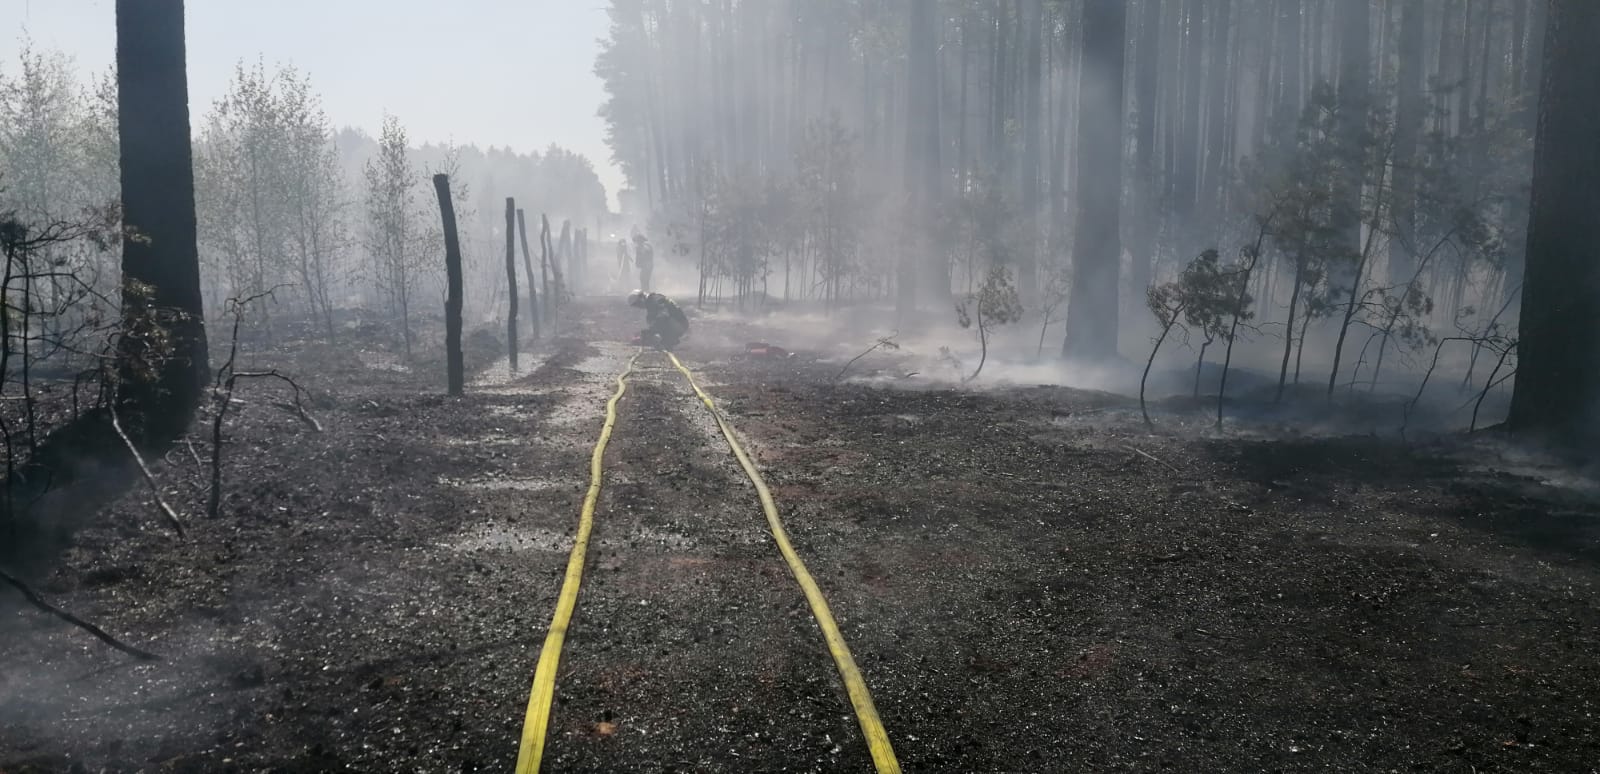 Zdjęcie przedstawia spalony las i strażaków pracujących przy wężach gaśniczych. Fot. Archiwum Nadleśnictwa Sieraków.